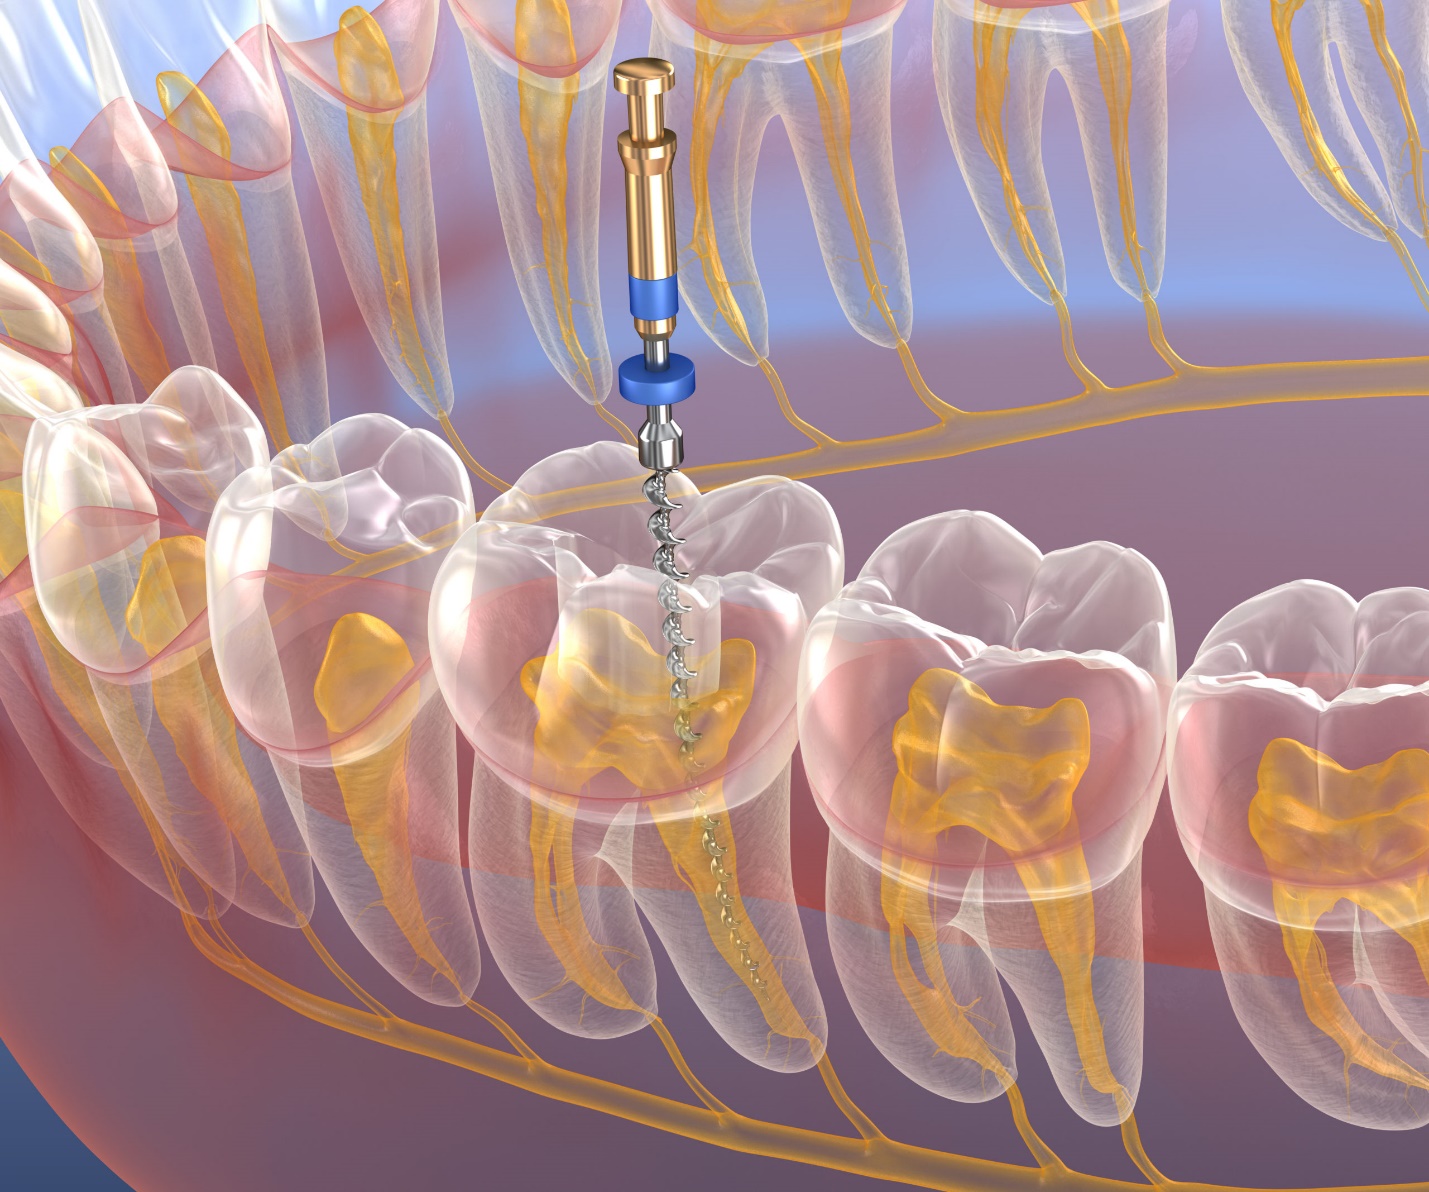 همه چیز درباره درمان مجدد ریشه ی دندان